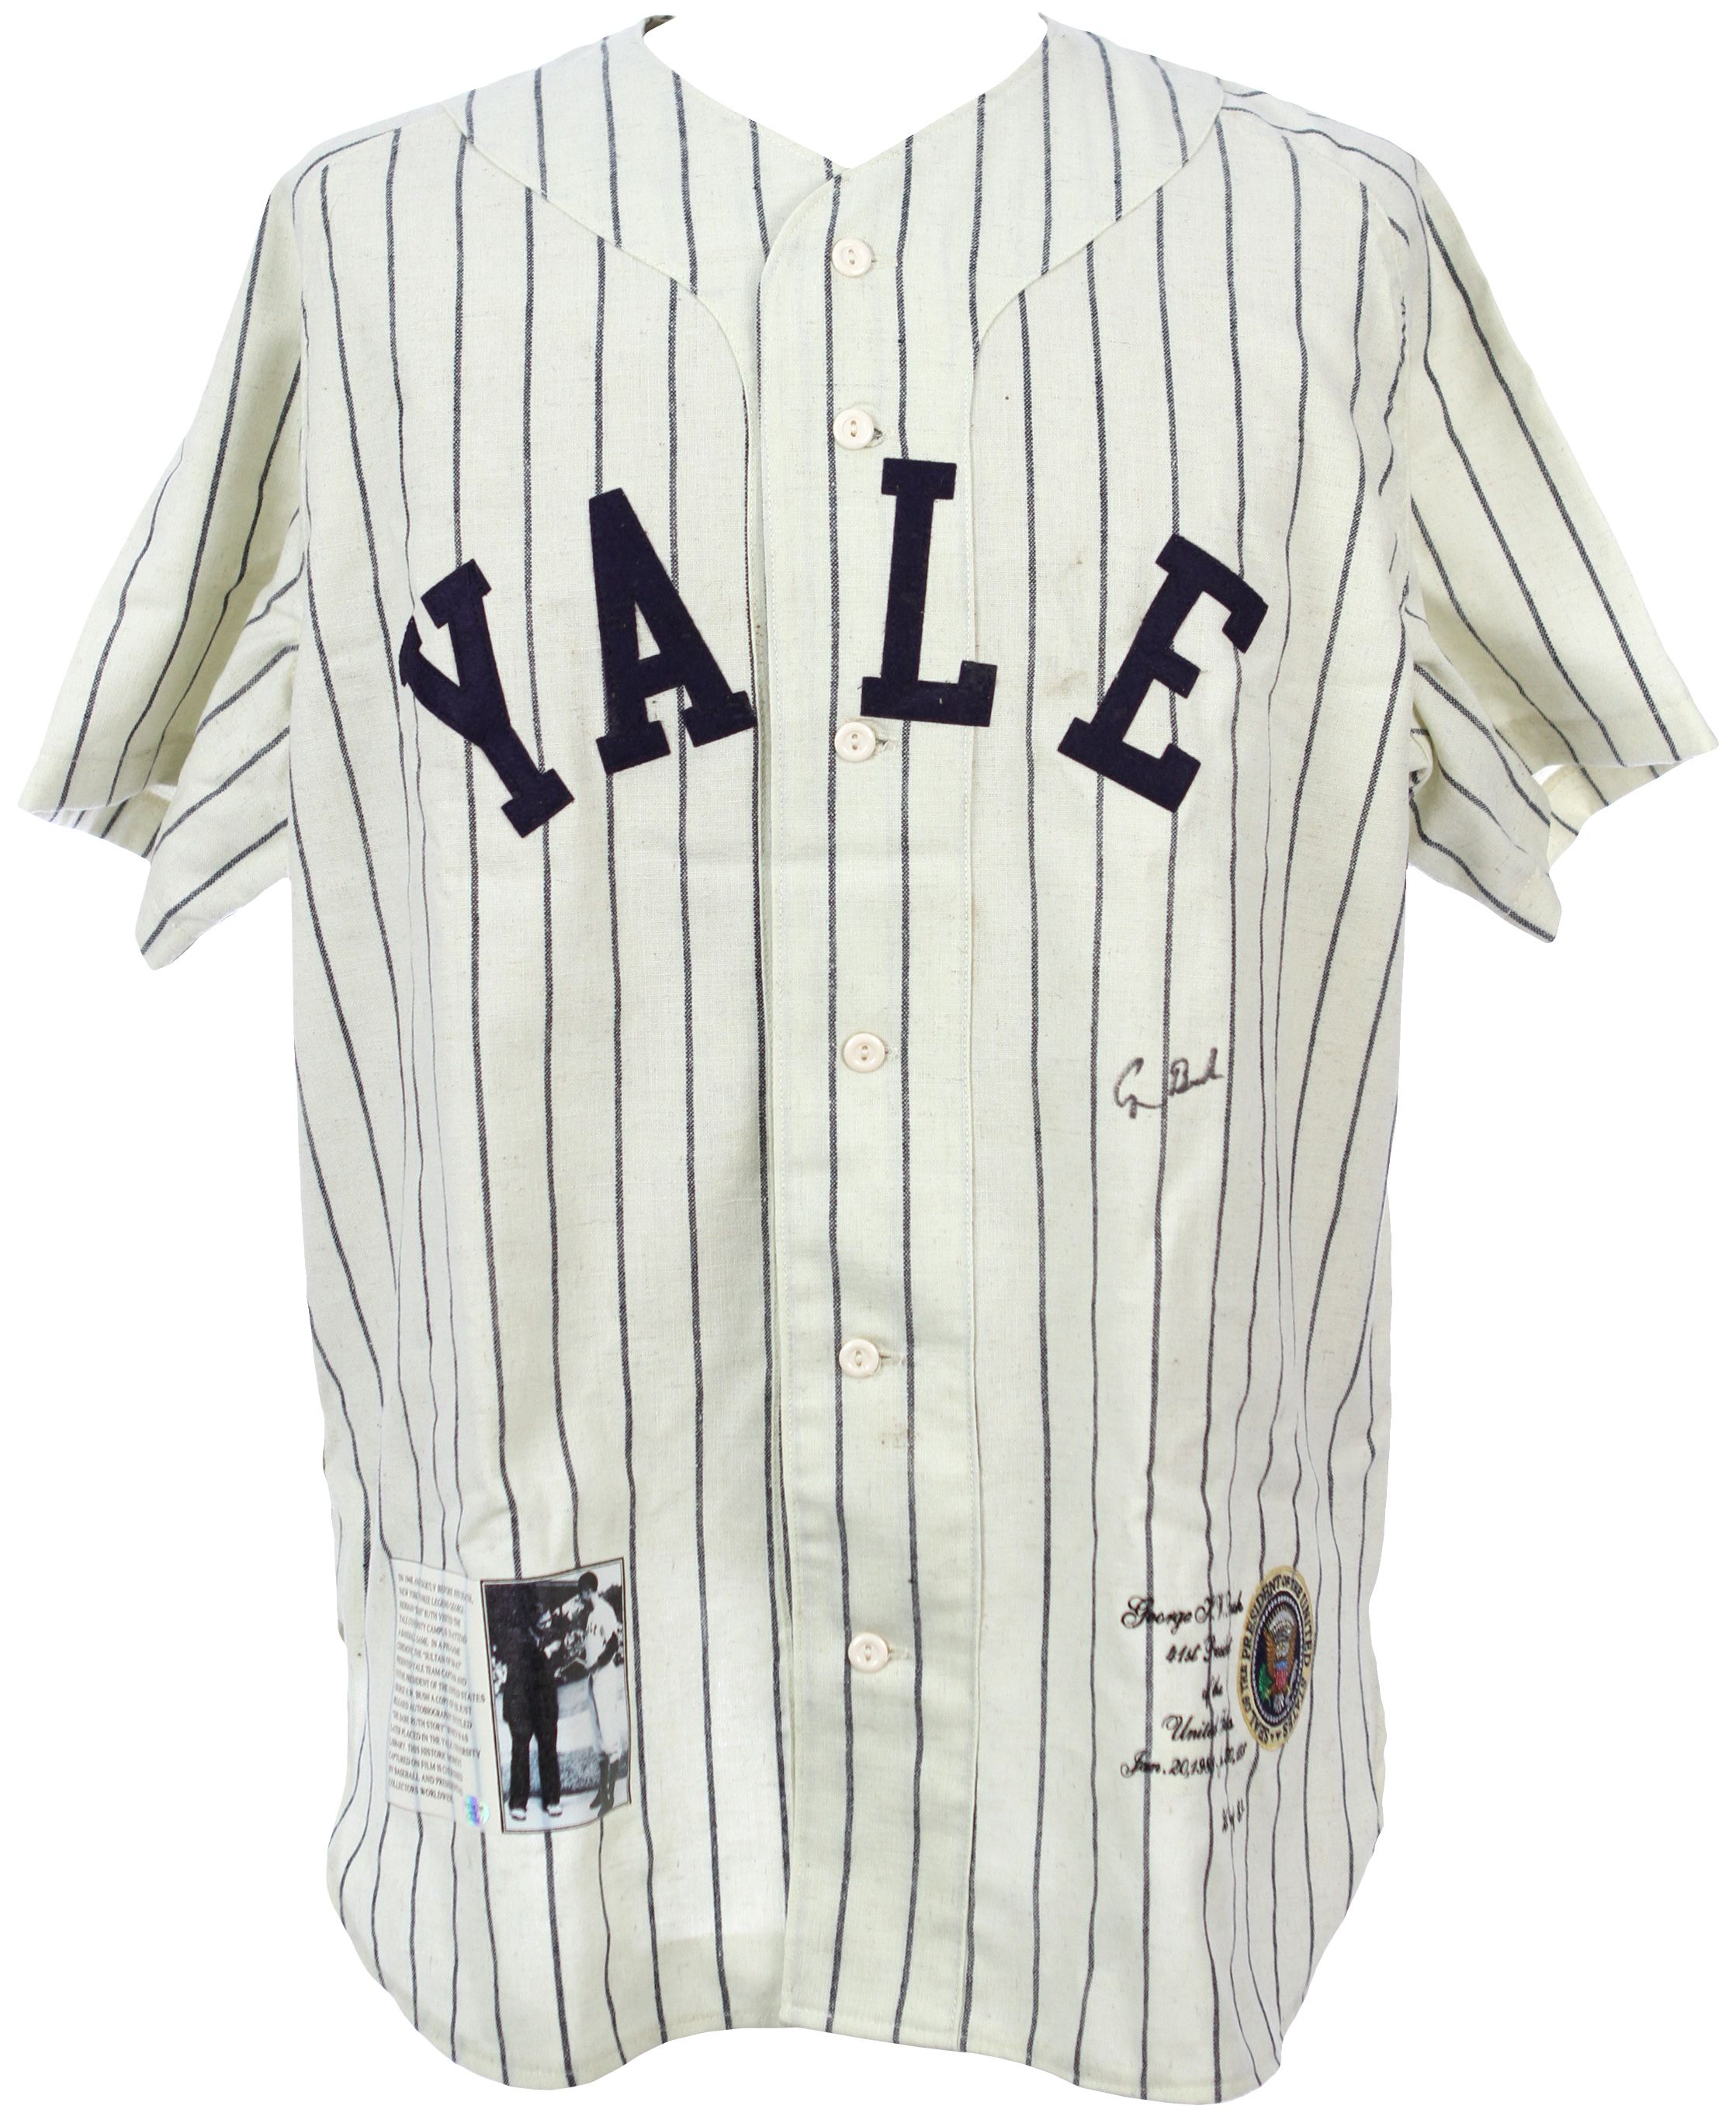 yale baseball jersey